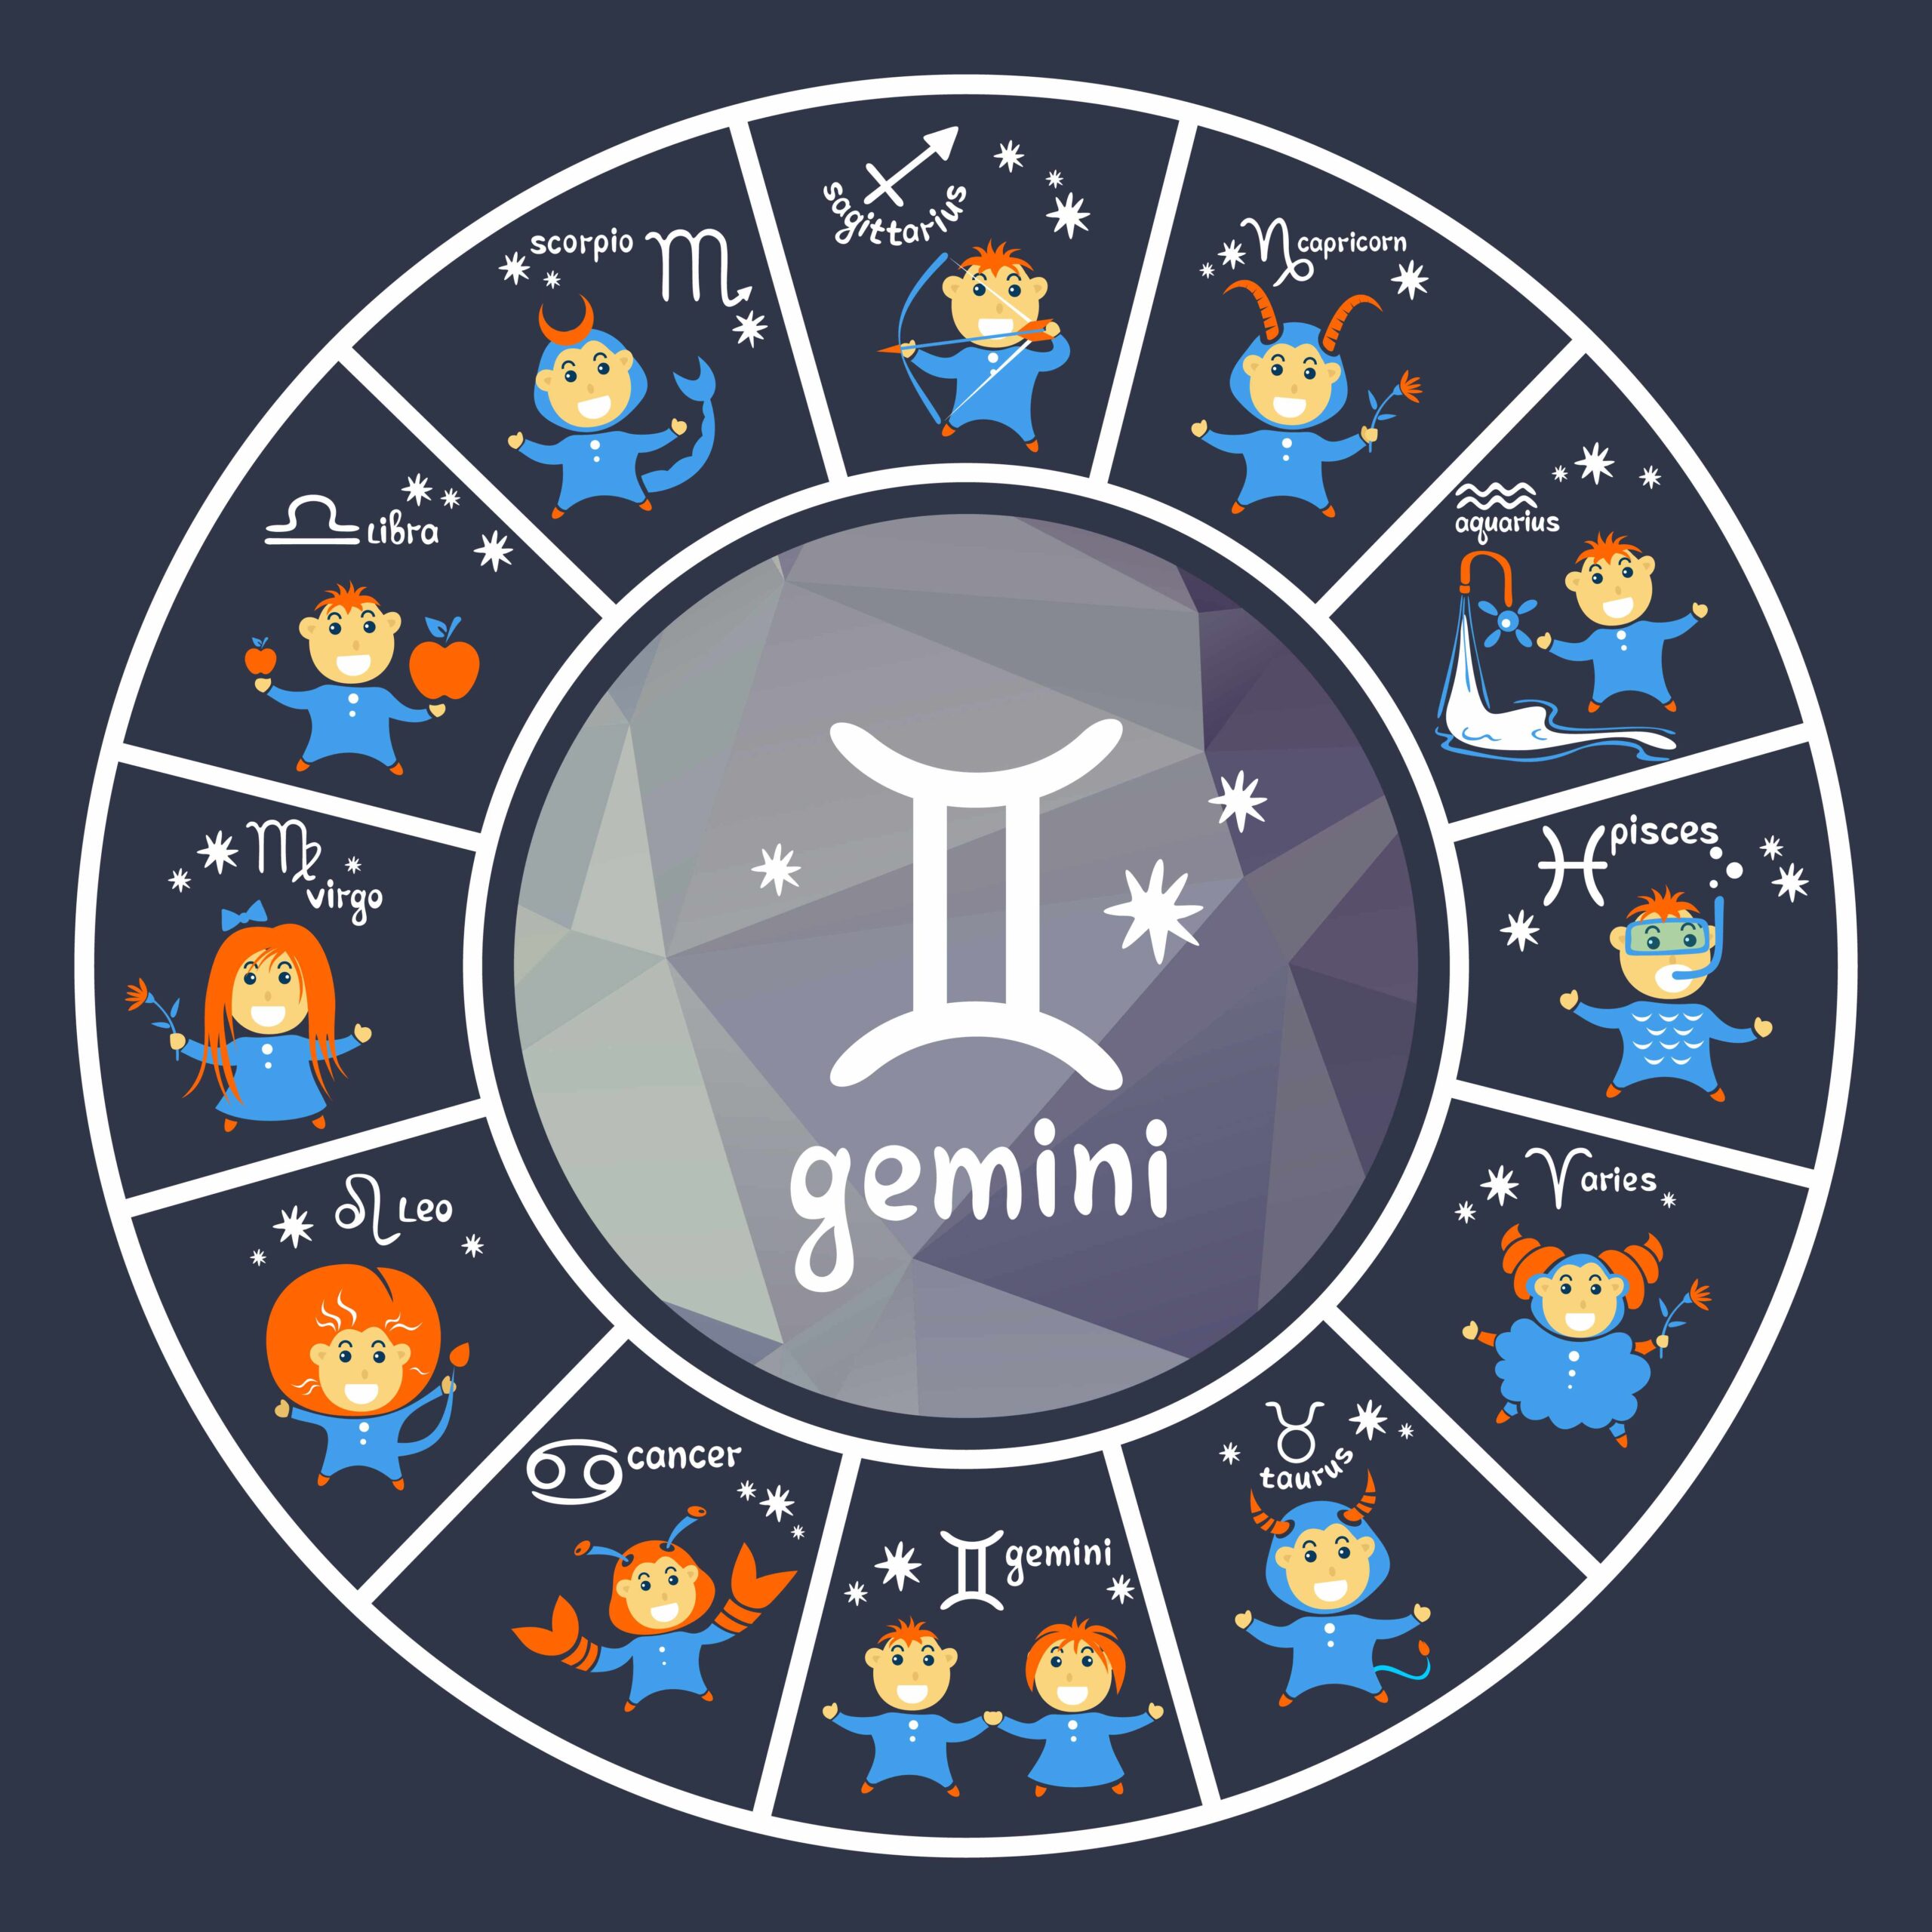 Hvordan er Geminis forelsket?